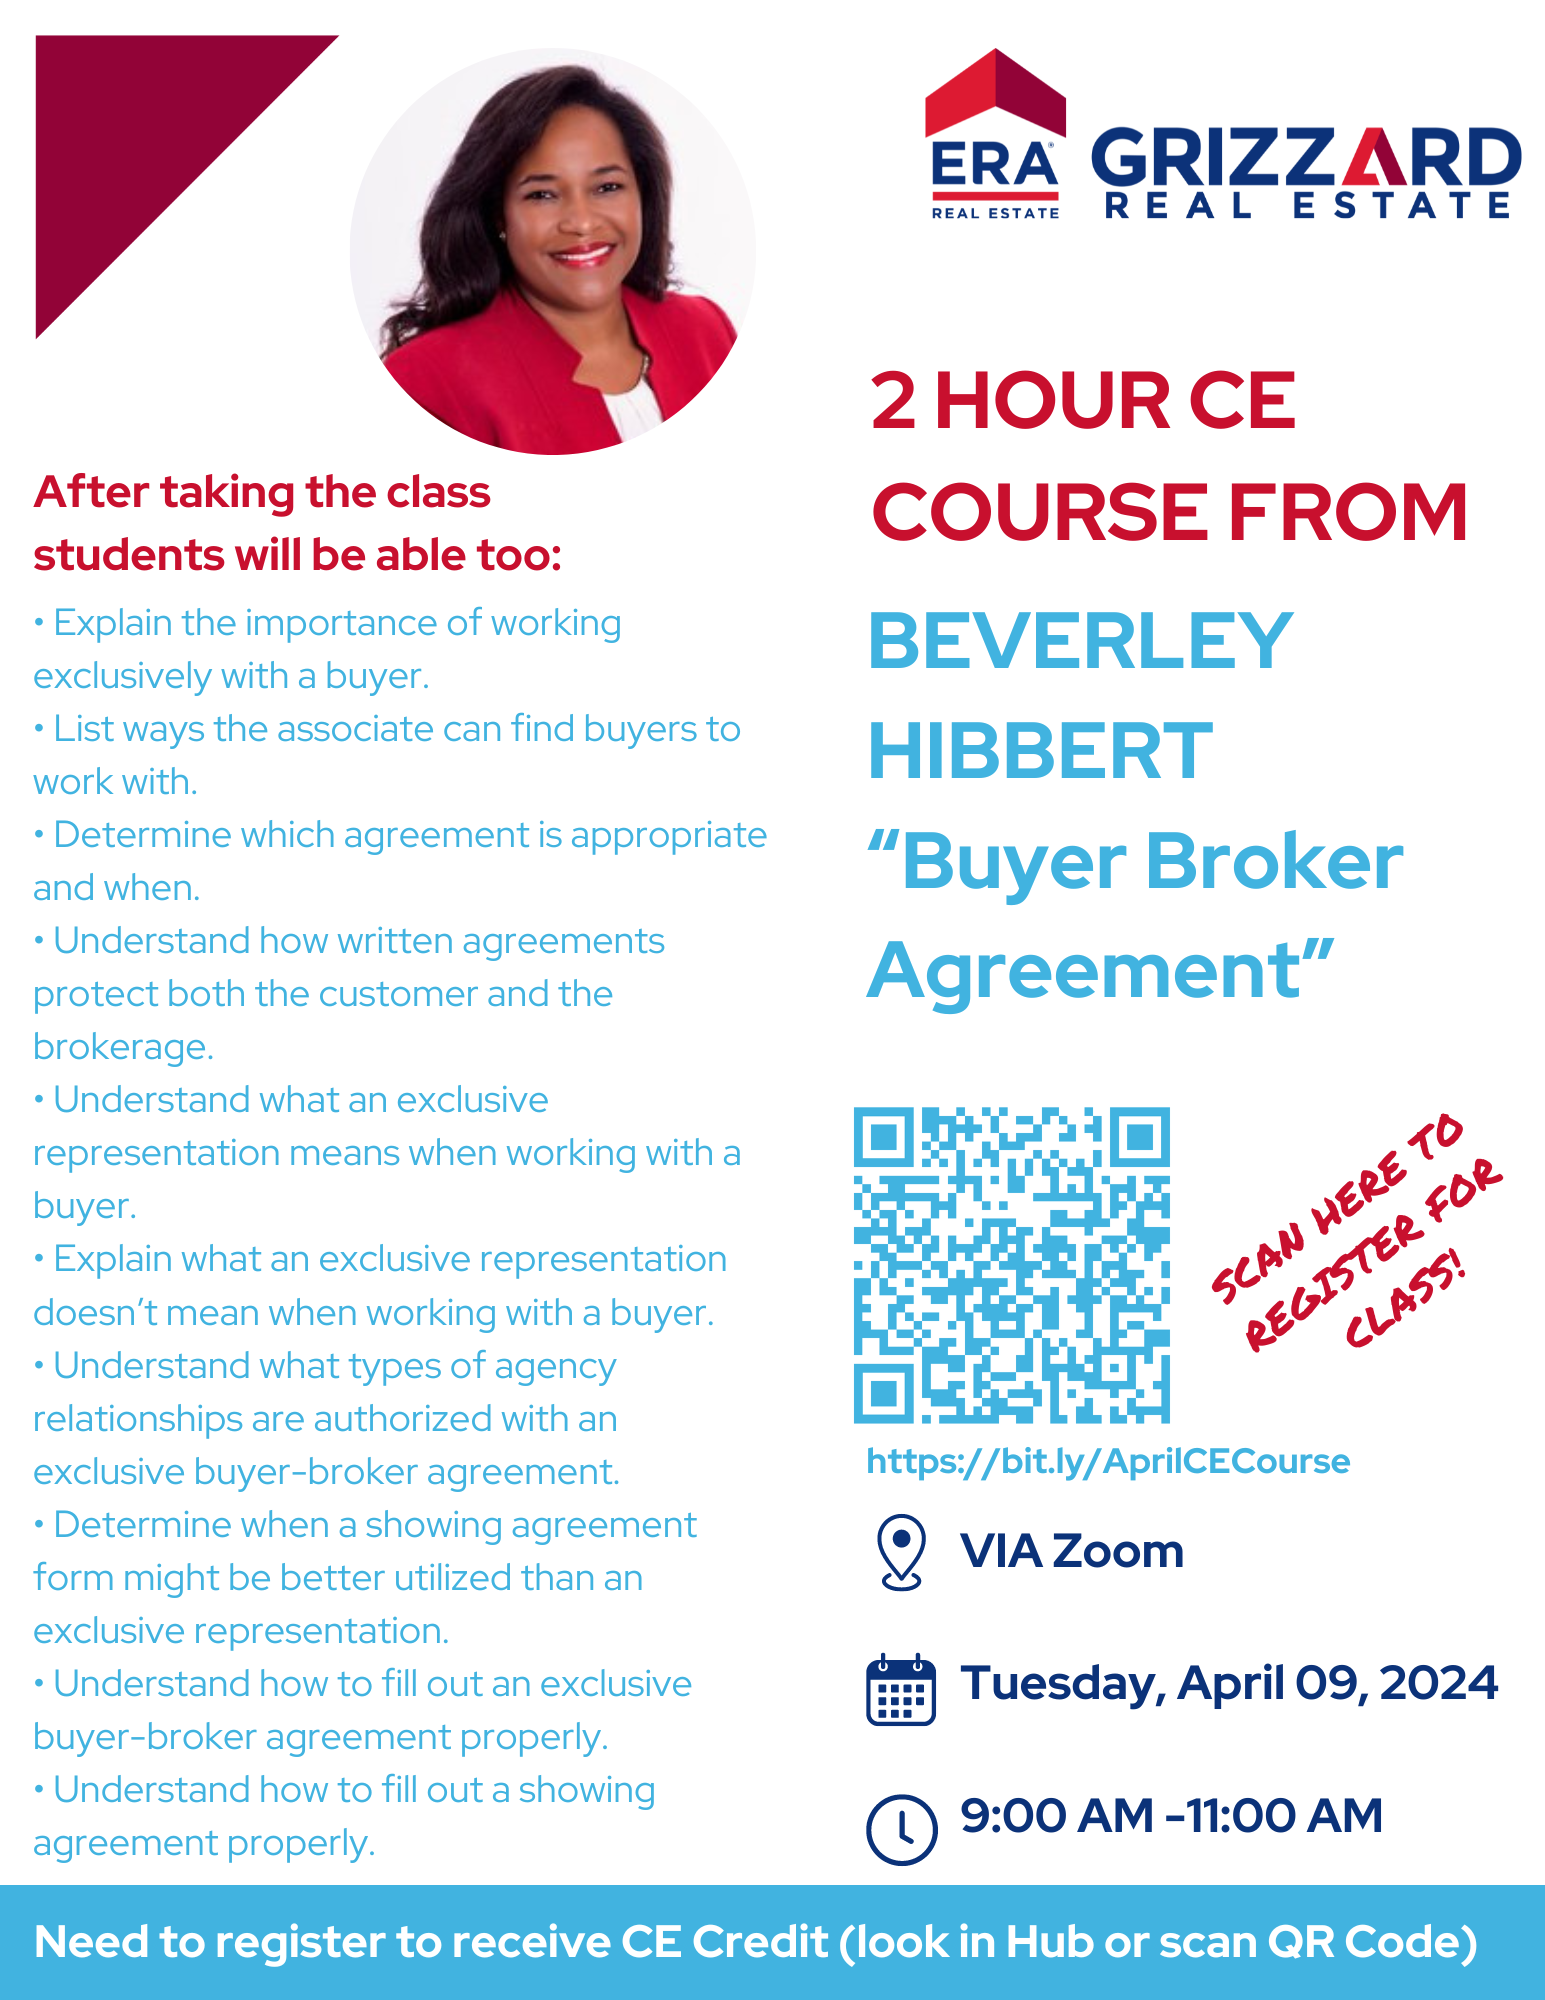 2 Hour Buyer Brokerage CE Course presented by beverley hibbert